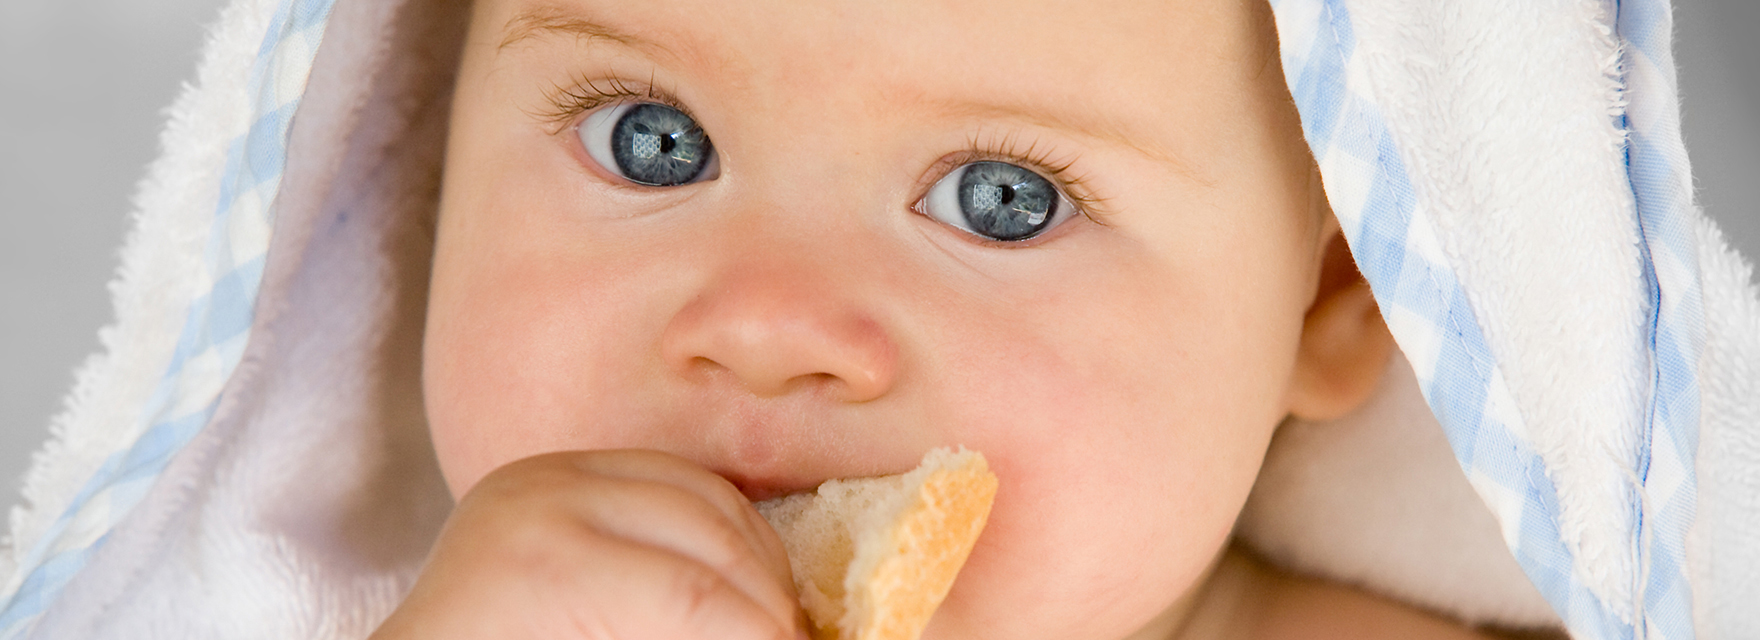 Zdravá pomazánka na první kousek chleba pro vaše dítě